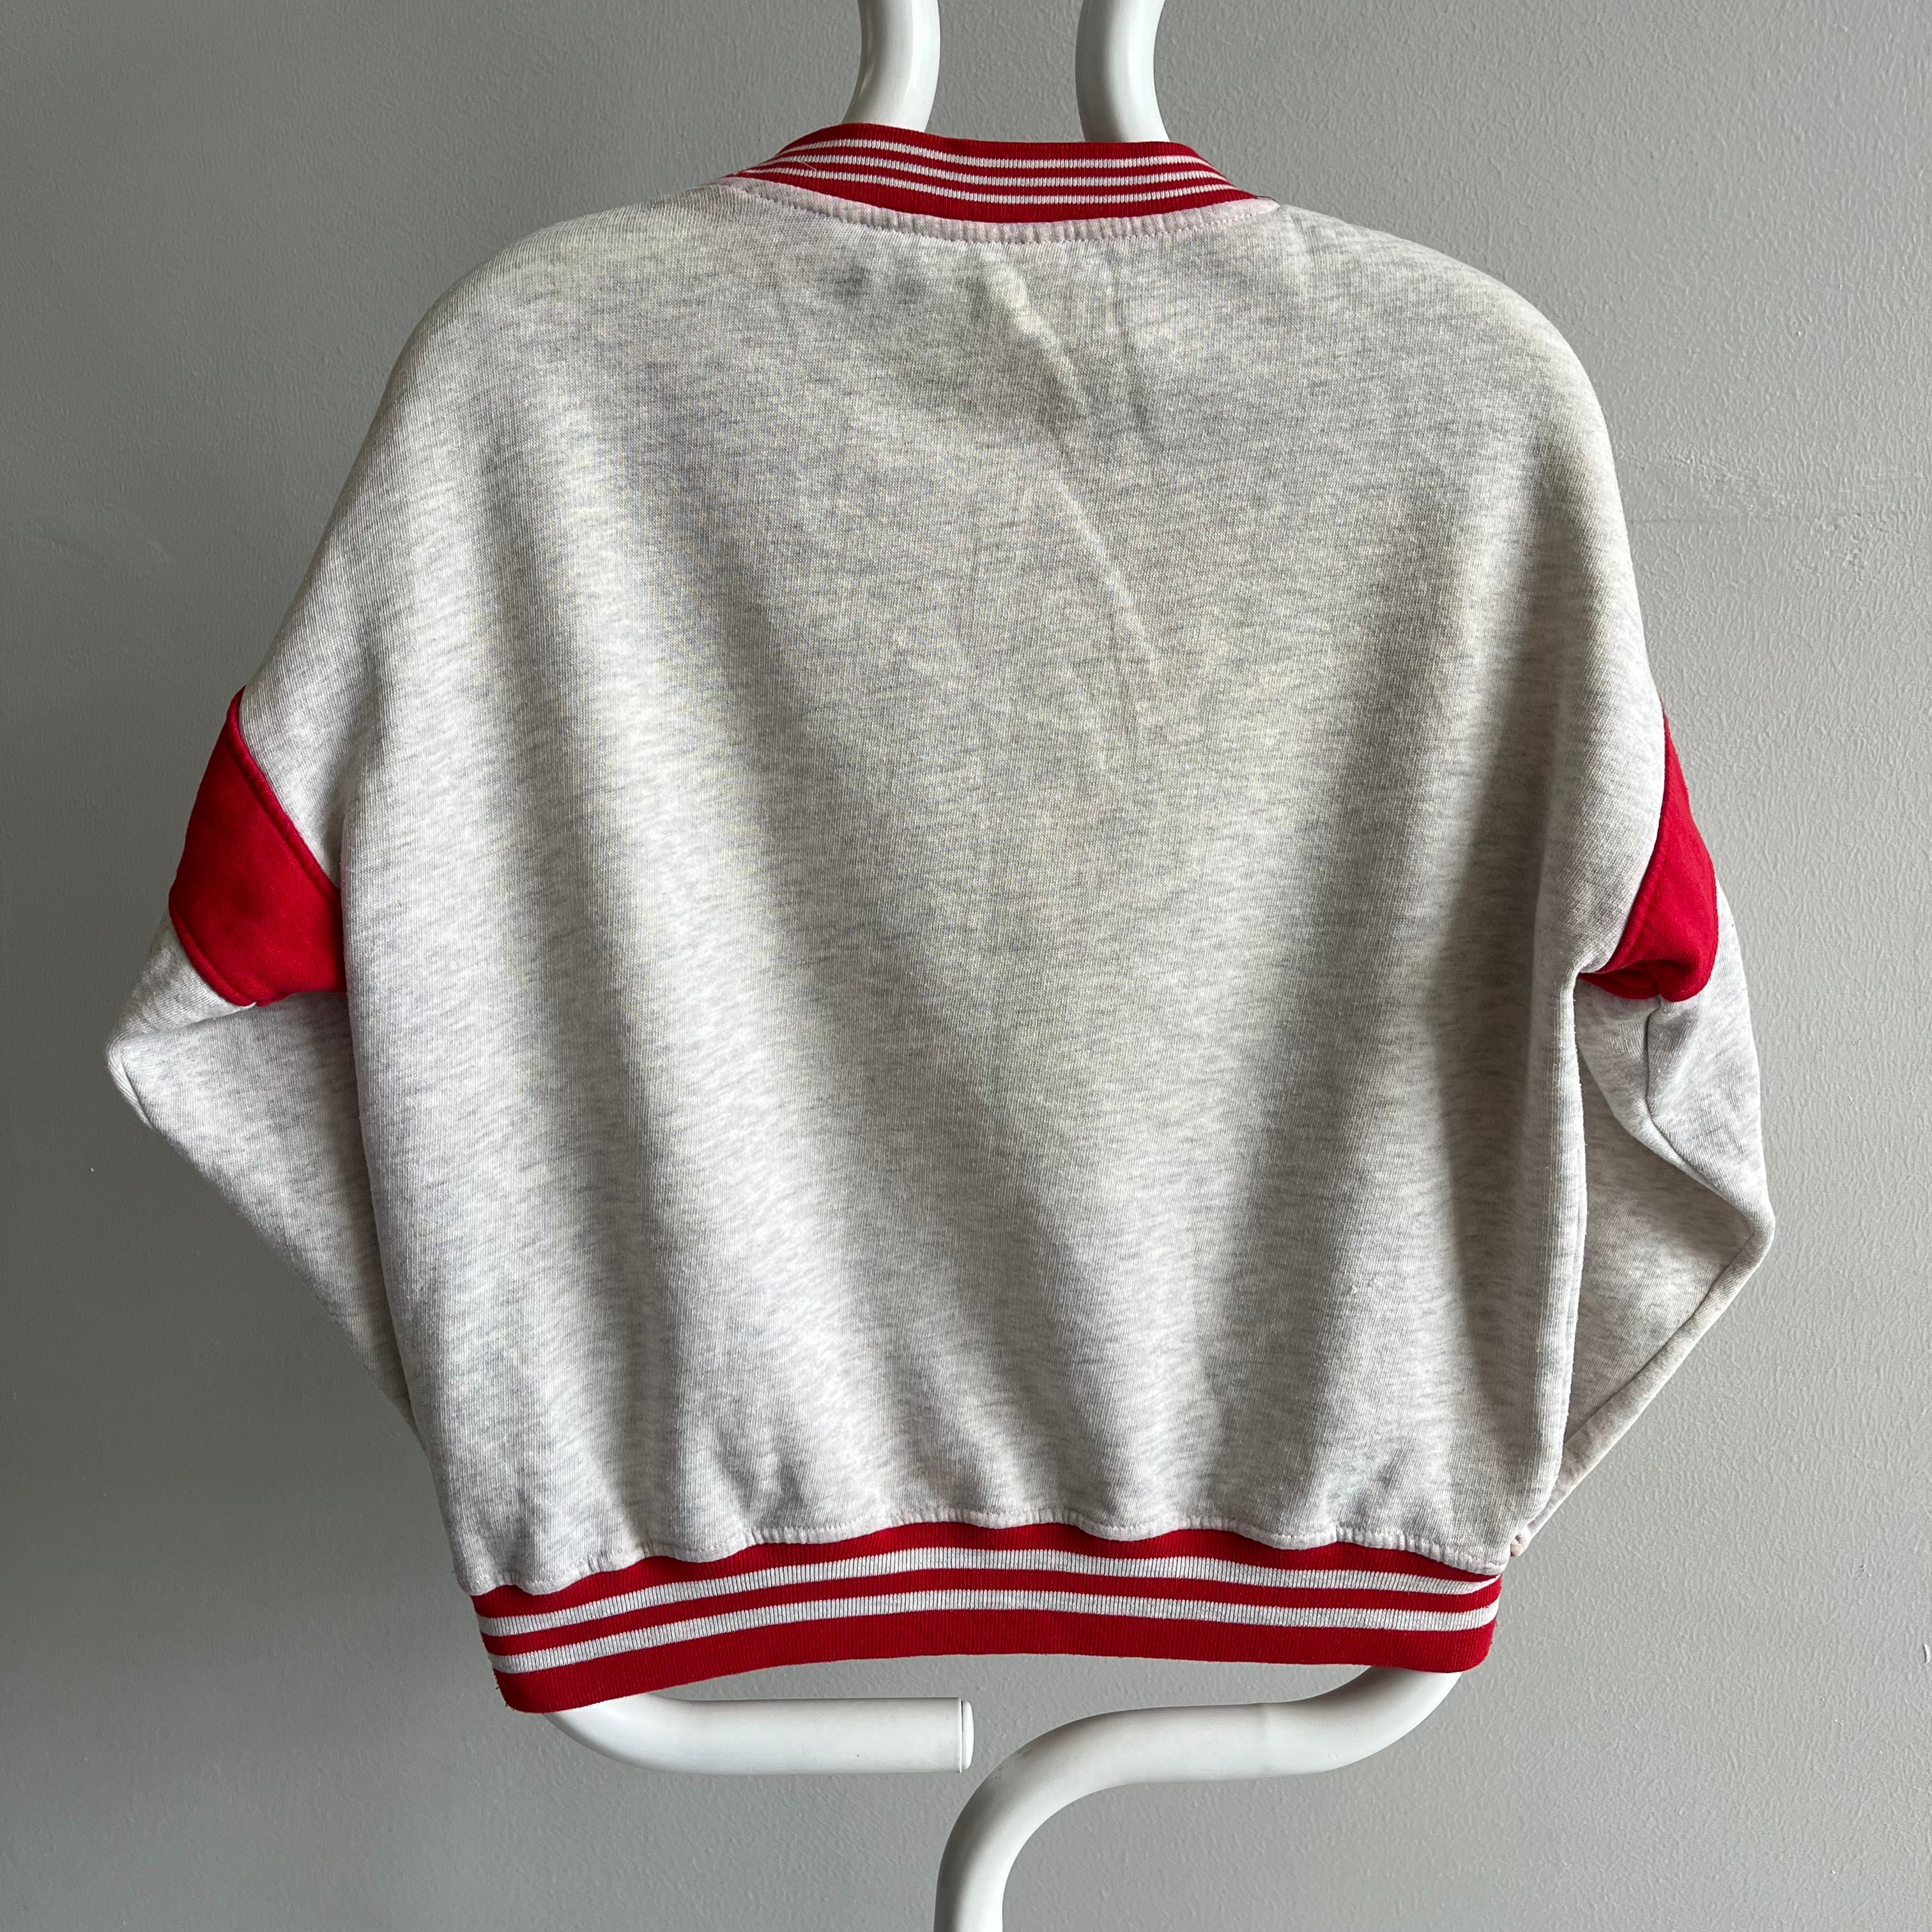 1990s Color Block Wilson Sweatshirt  (that belonged to marvin)